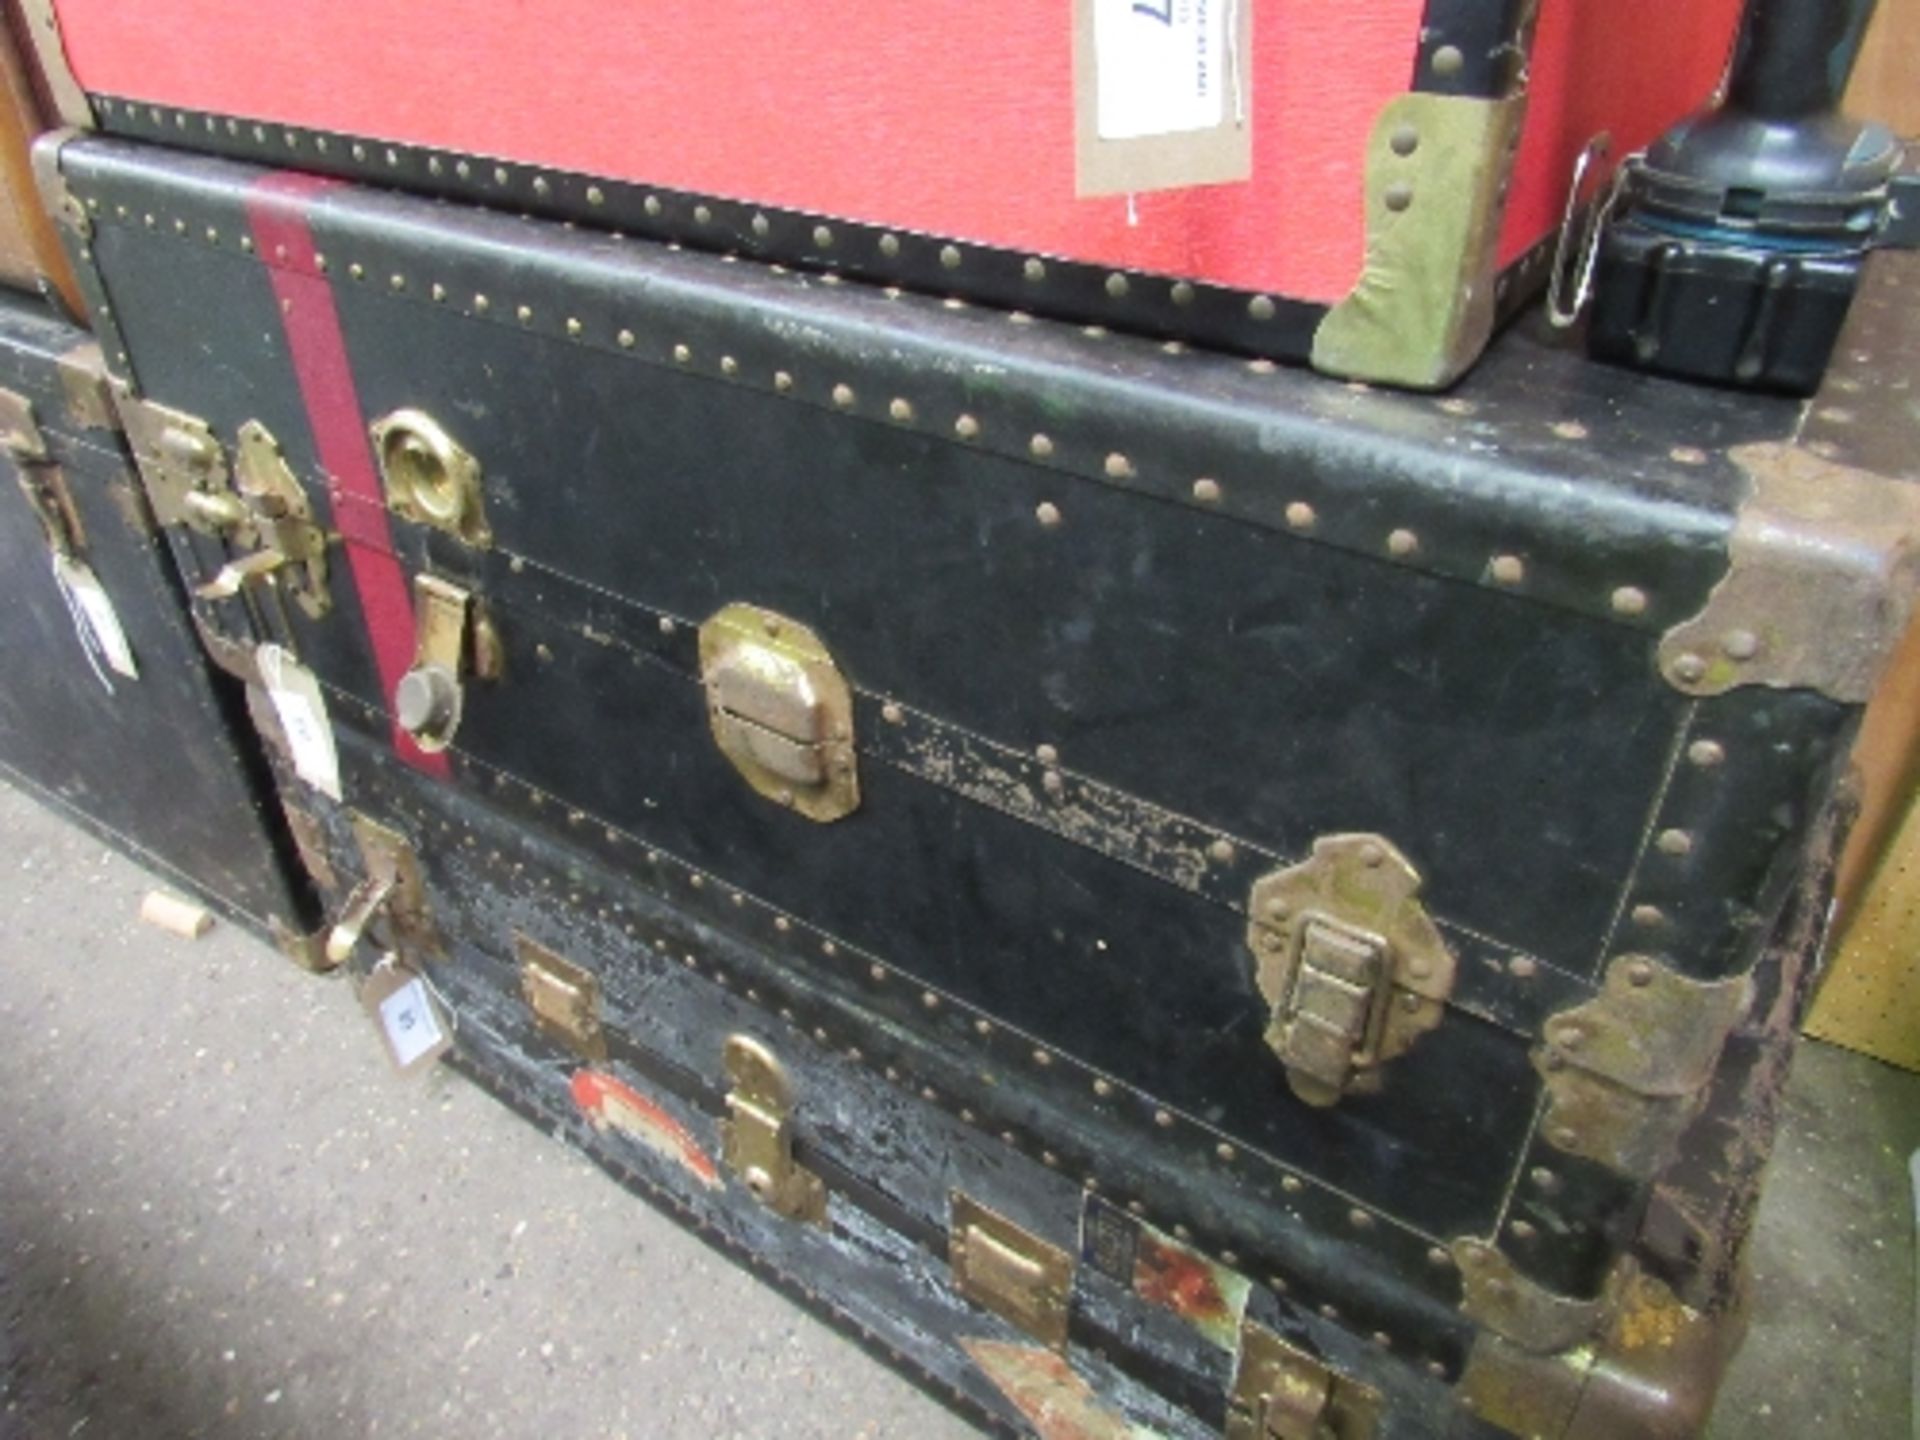 Black coloured wardrobe trunk. Estimate £10-20.